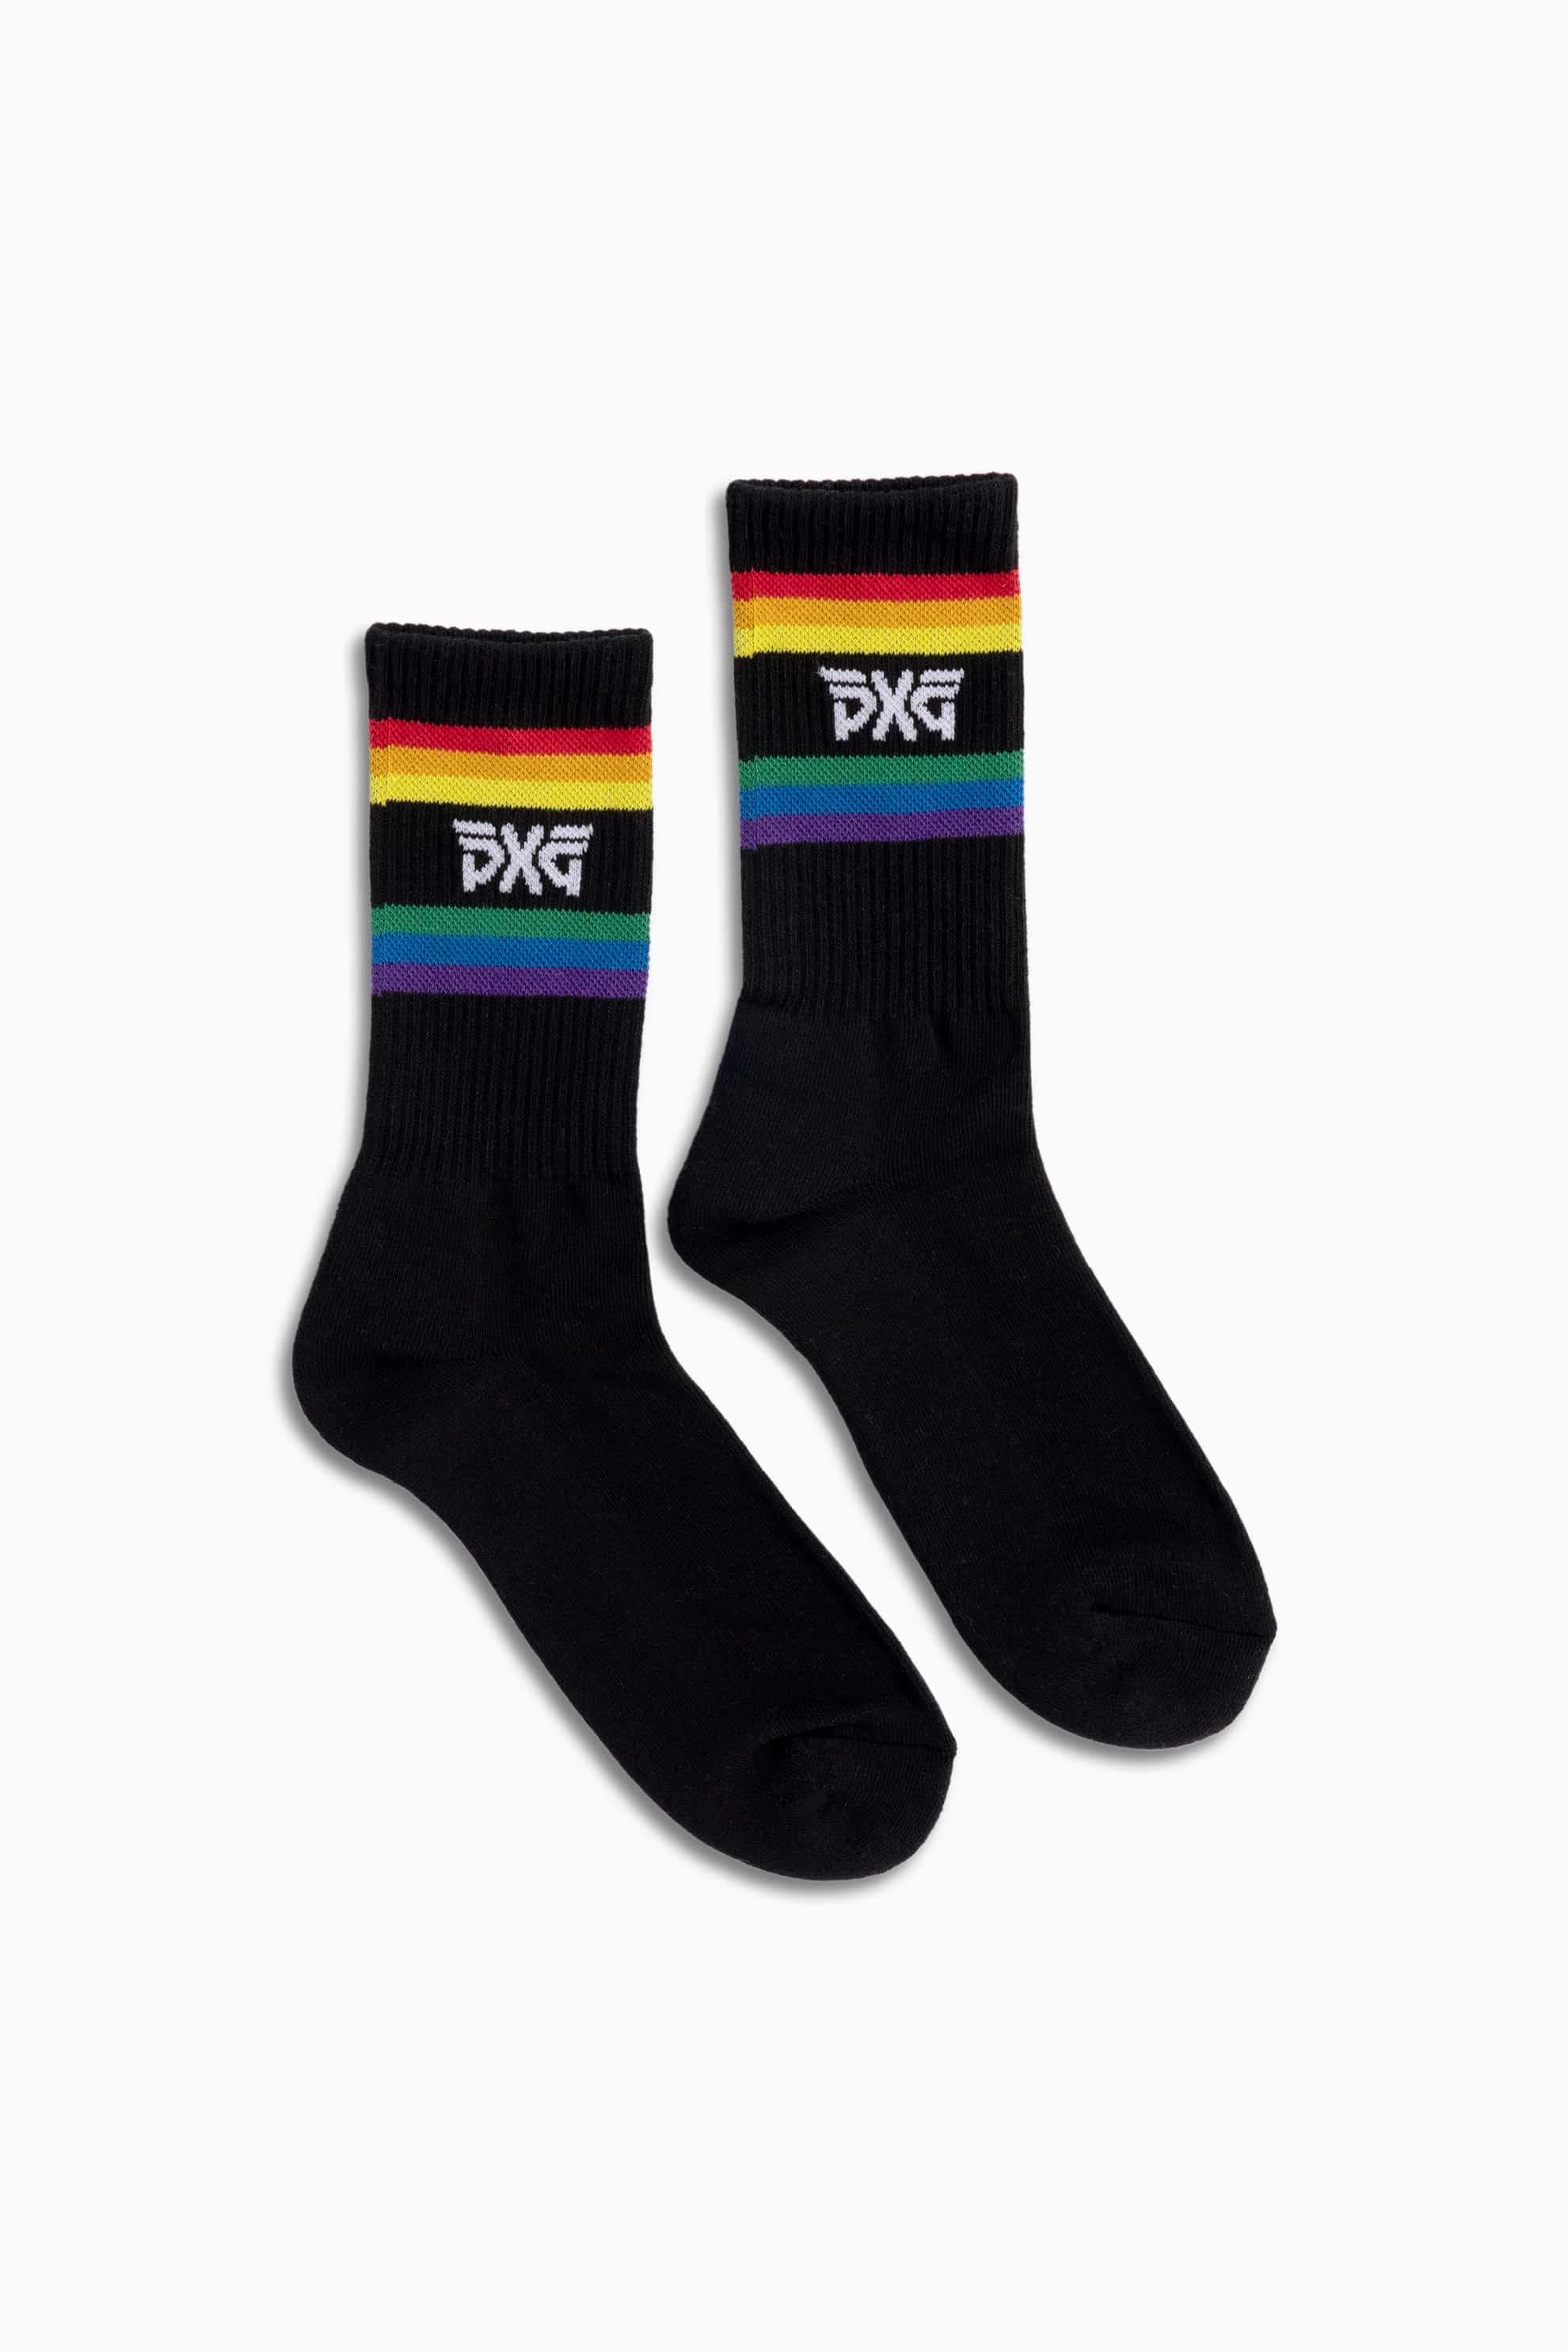 Buy Pride Crew | Men\'s PXG Socks